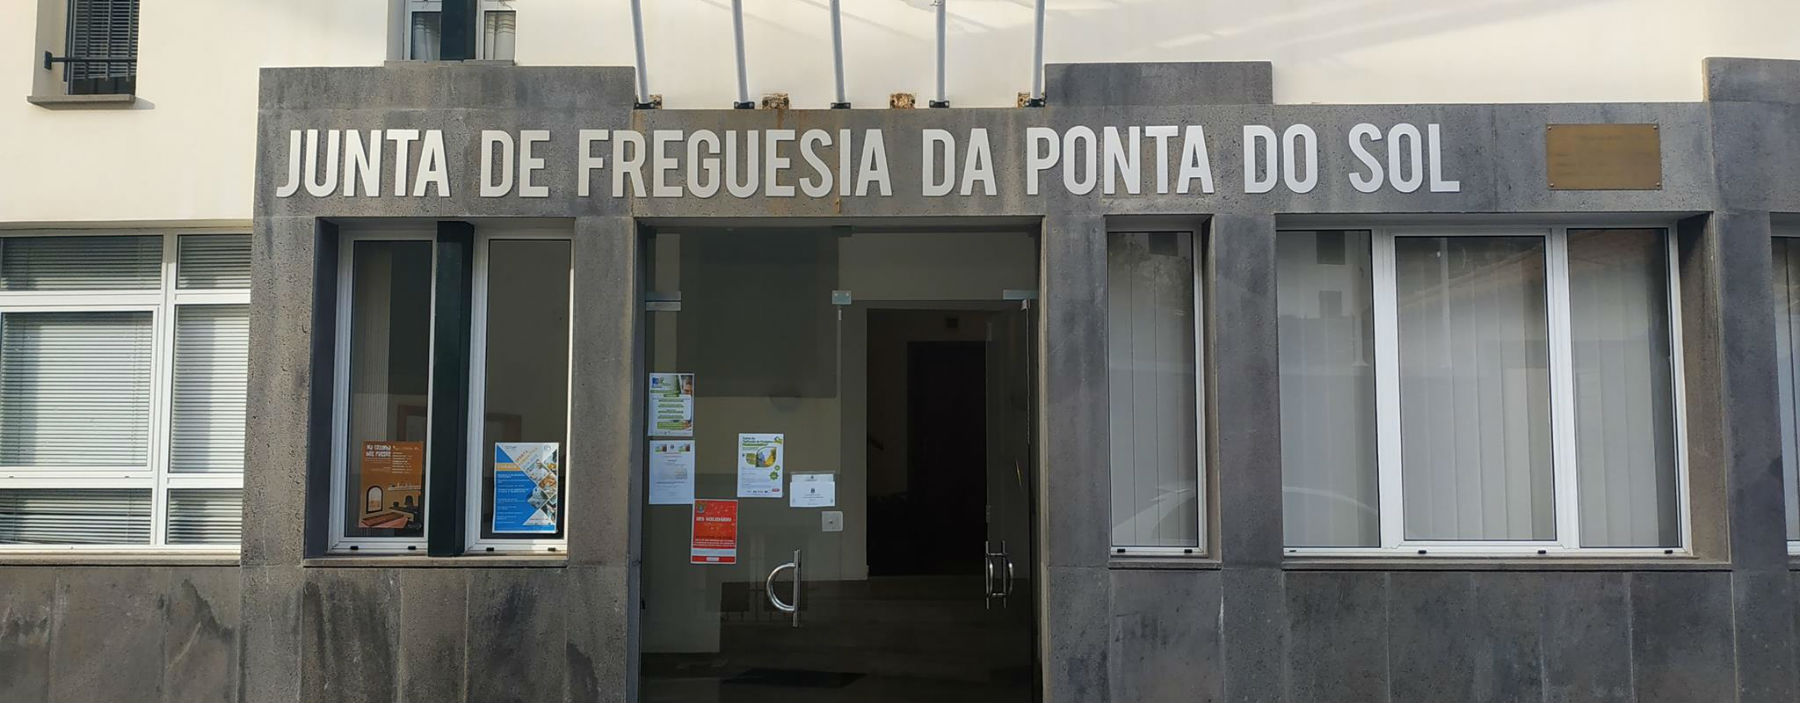 Freguesia_da_Ponta_do_Sol